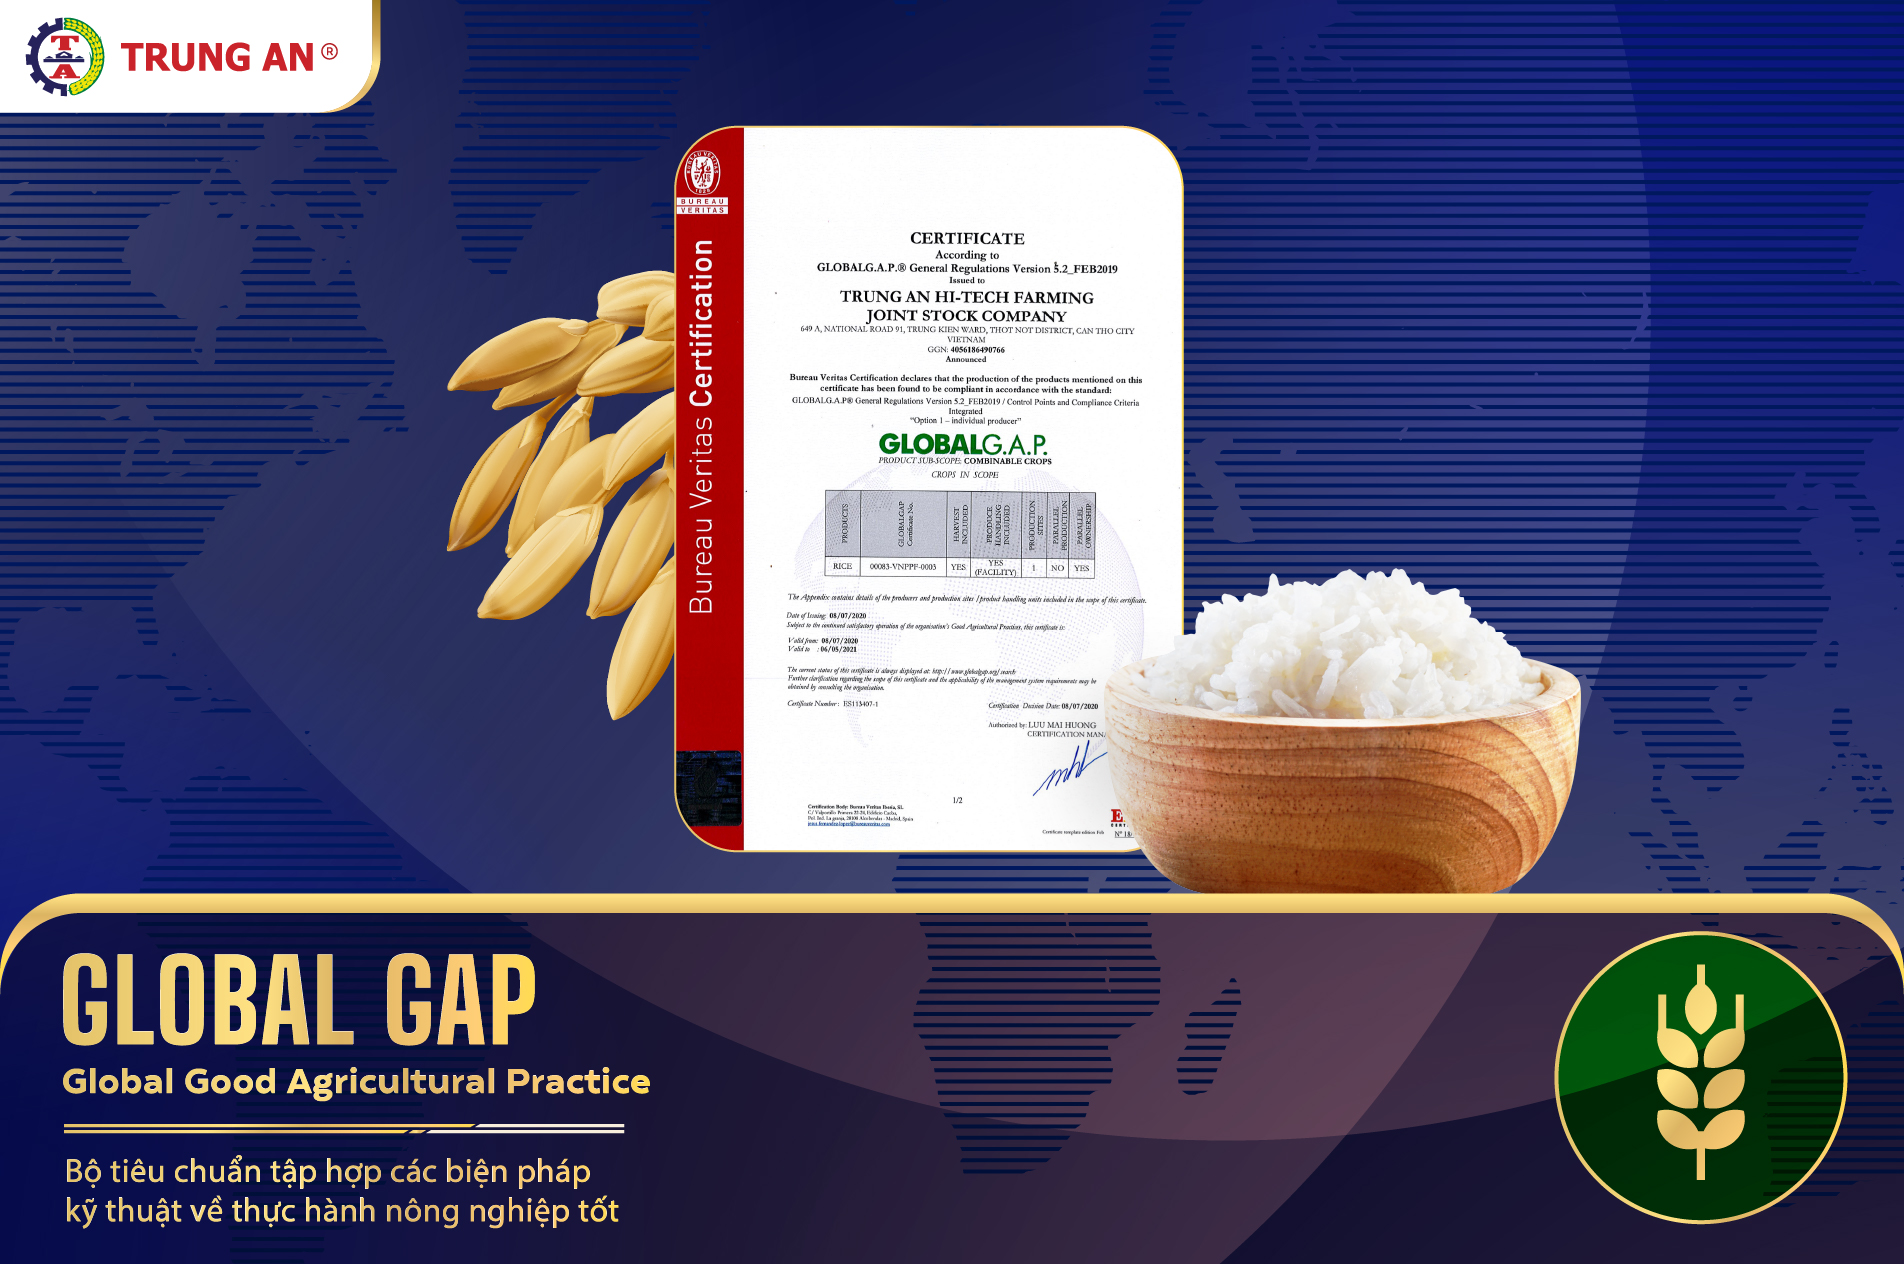 Tiêu chuẩn GlobalGAP: Chứng Minh Tiêu Chuẩn An Toàn Gạo Trung An